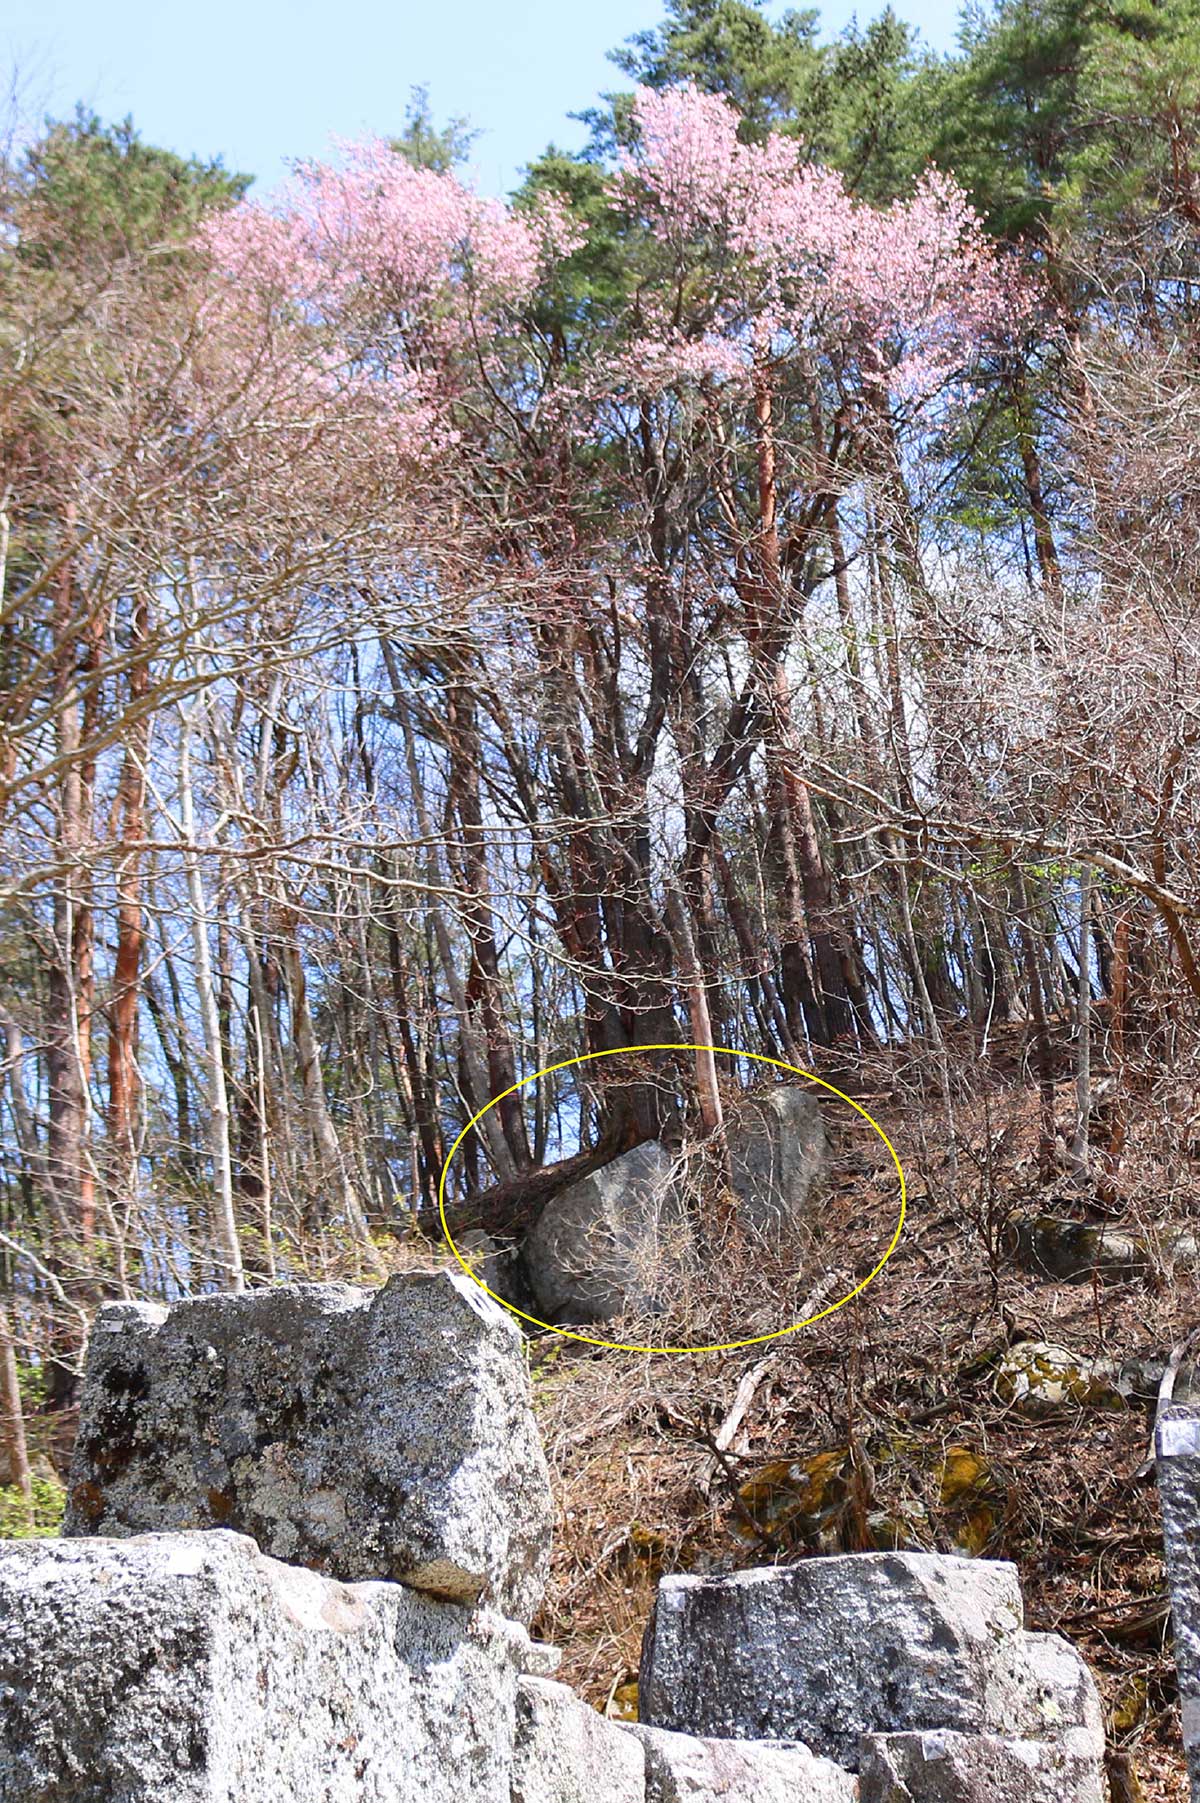 二番高炉東側の山の急斜面にも石割桜が…。花からたどると根元部分に花こう岩が見える（黄丸部分）。手前は二番高炉の石組み